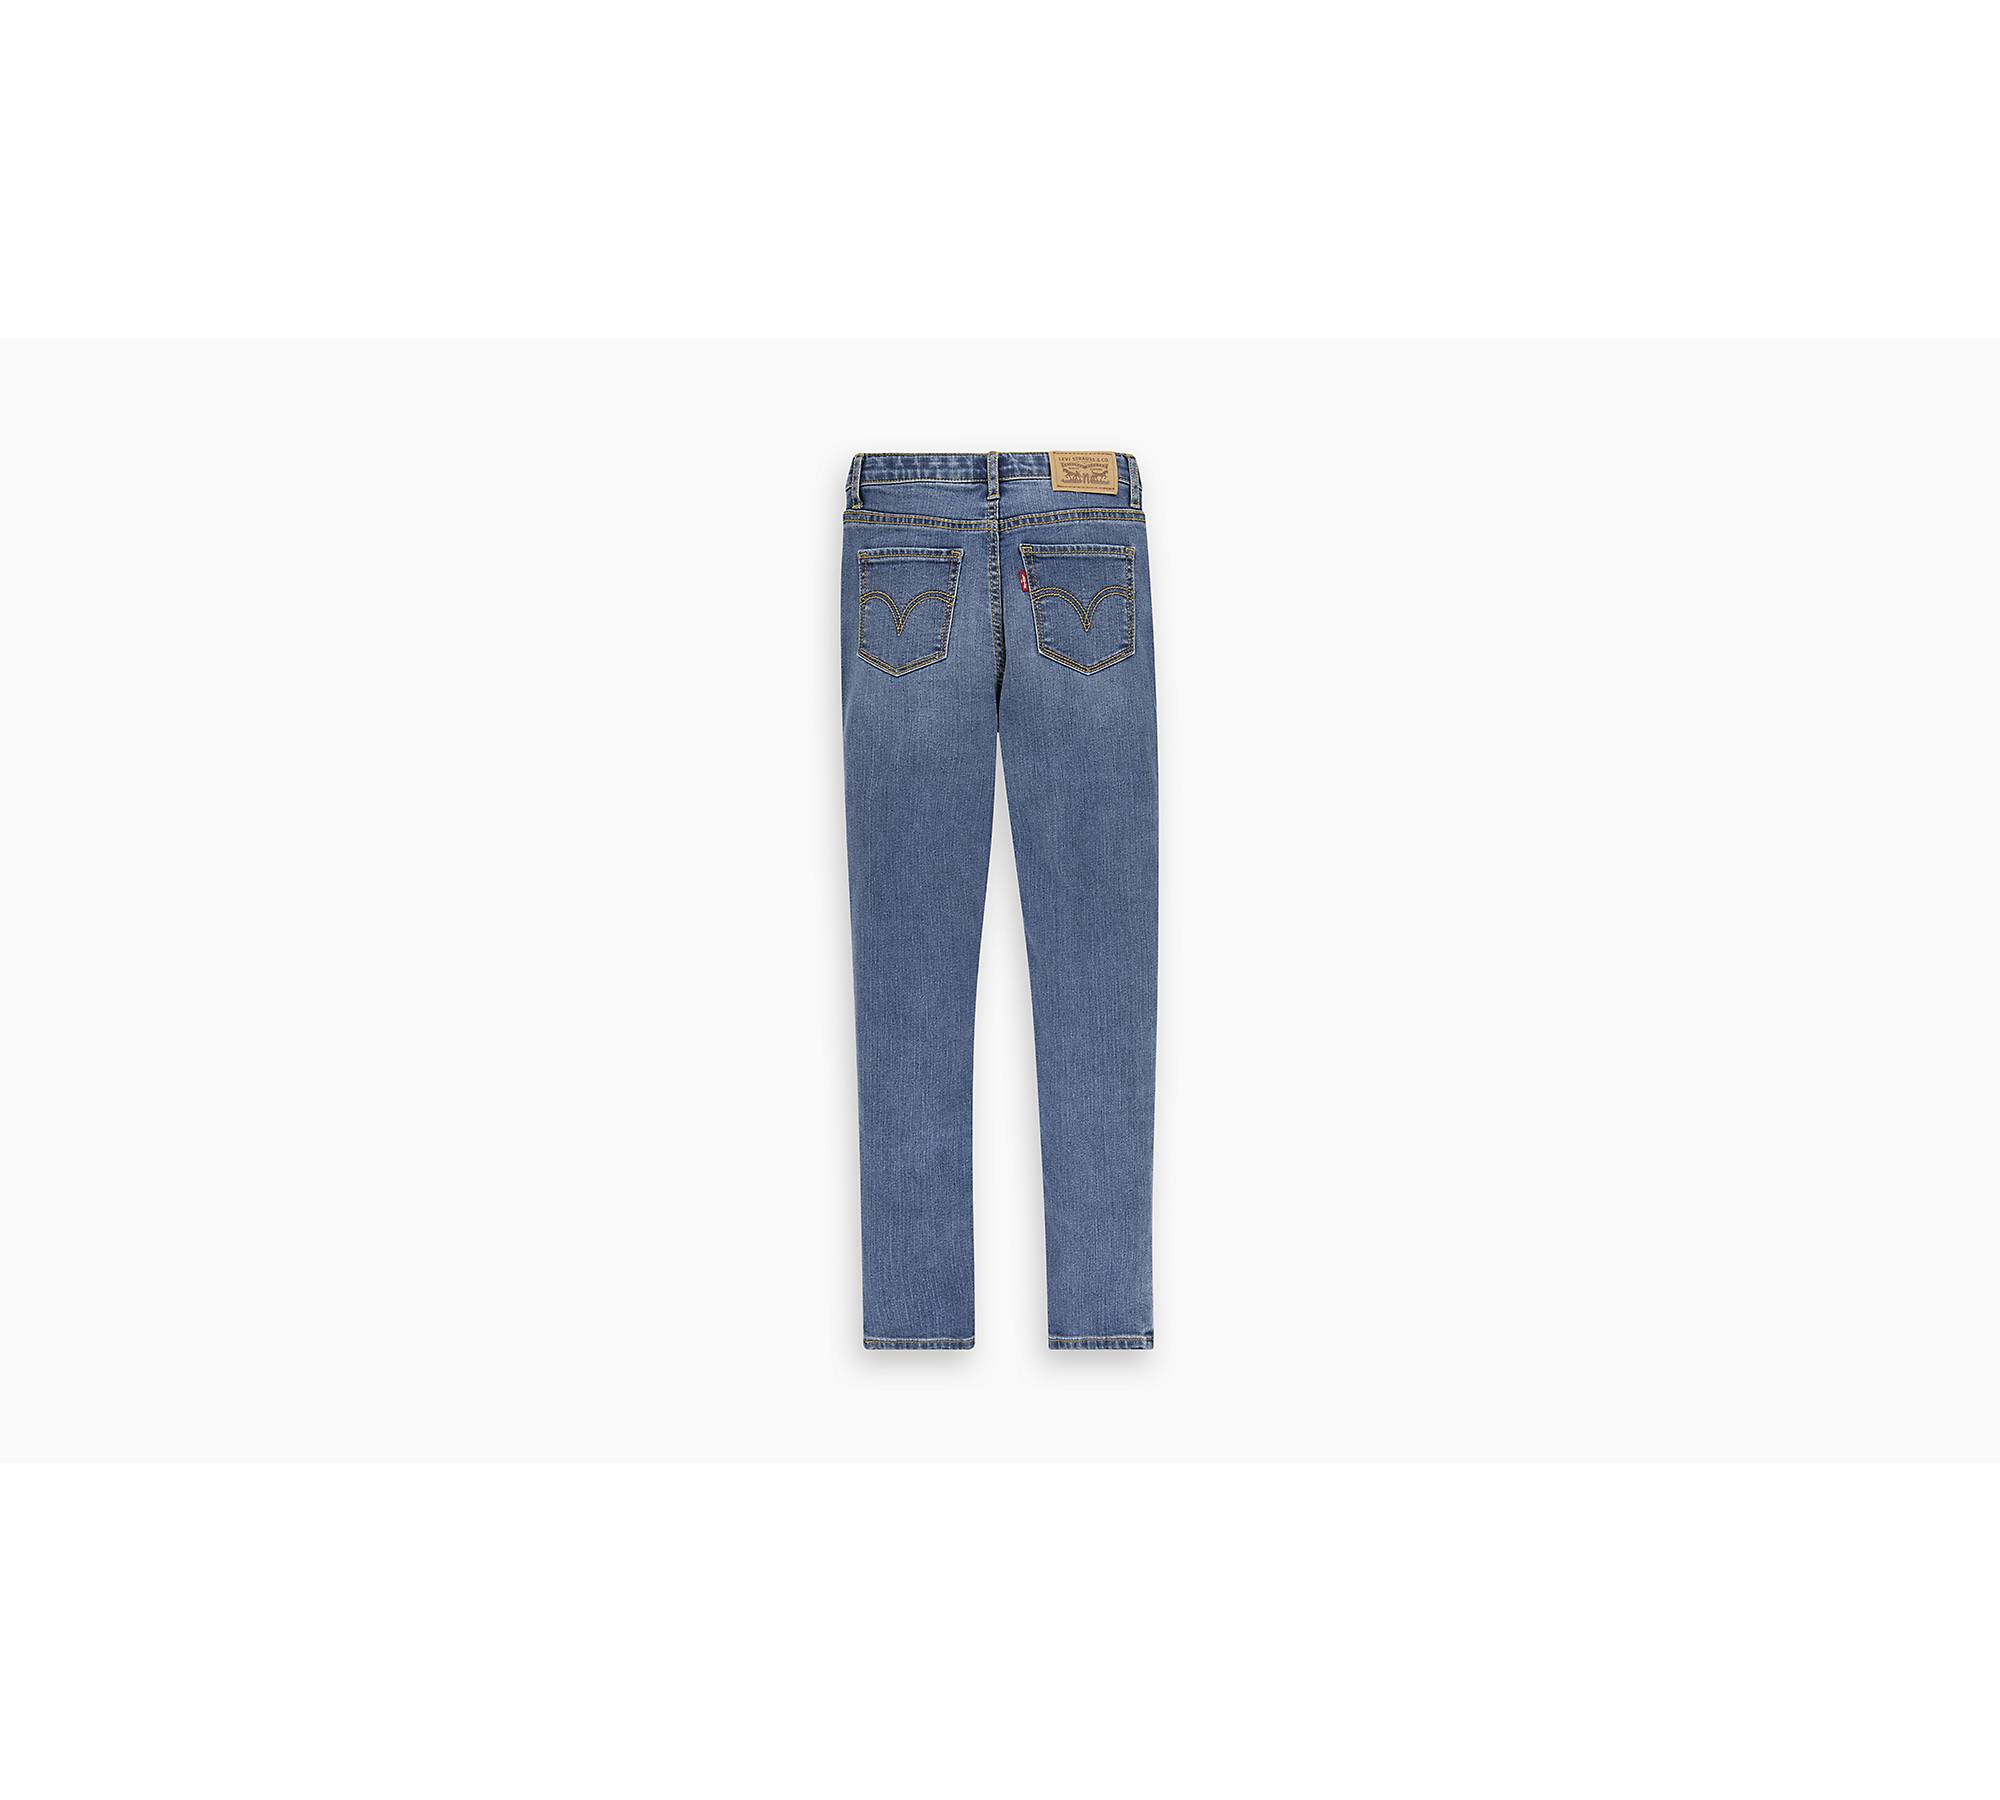 Rynke panden Arrowhead Vi ses 720™ High Rise Super Skinny Jeans Til Børn - Sort | Levi's® DK